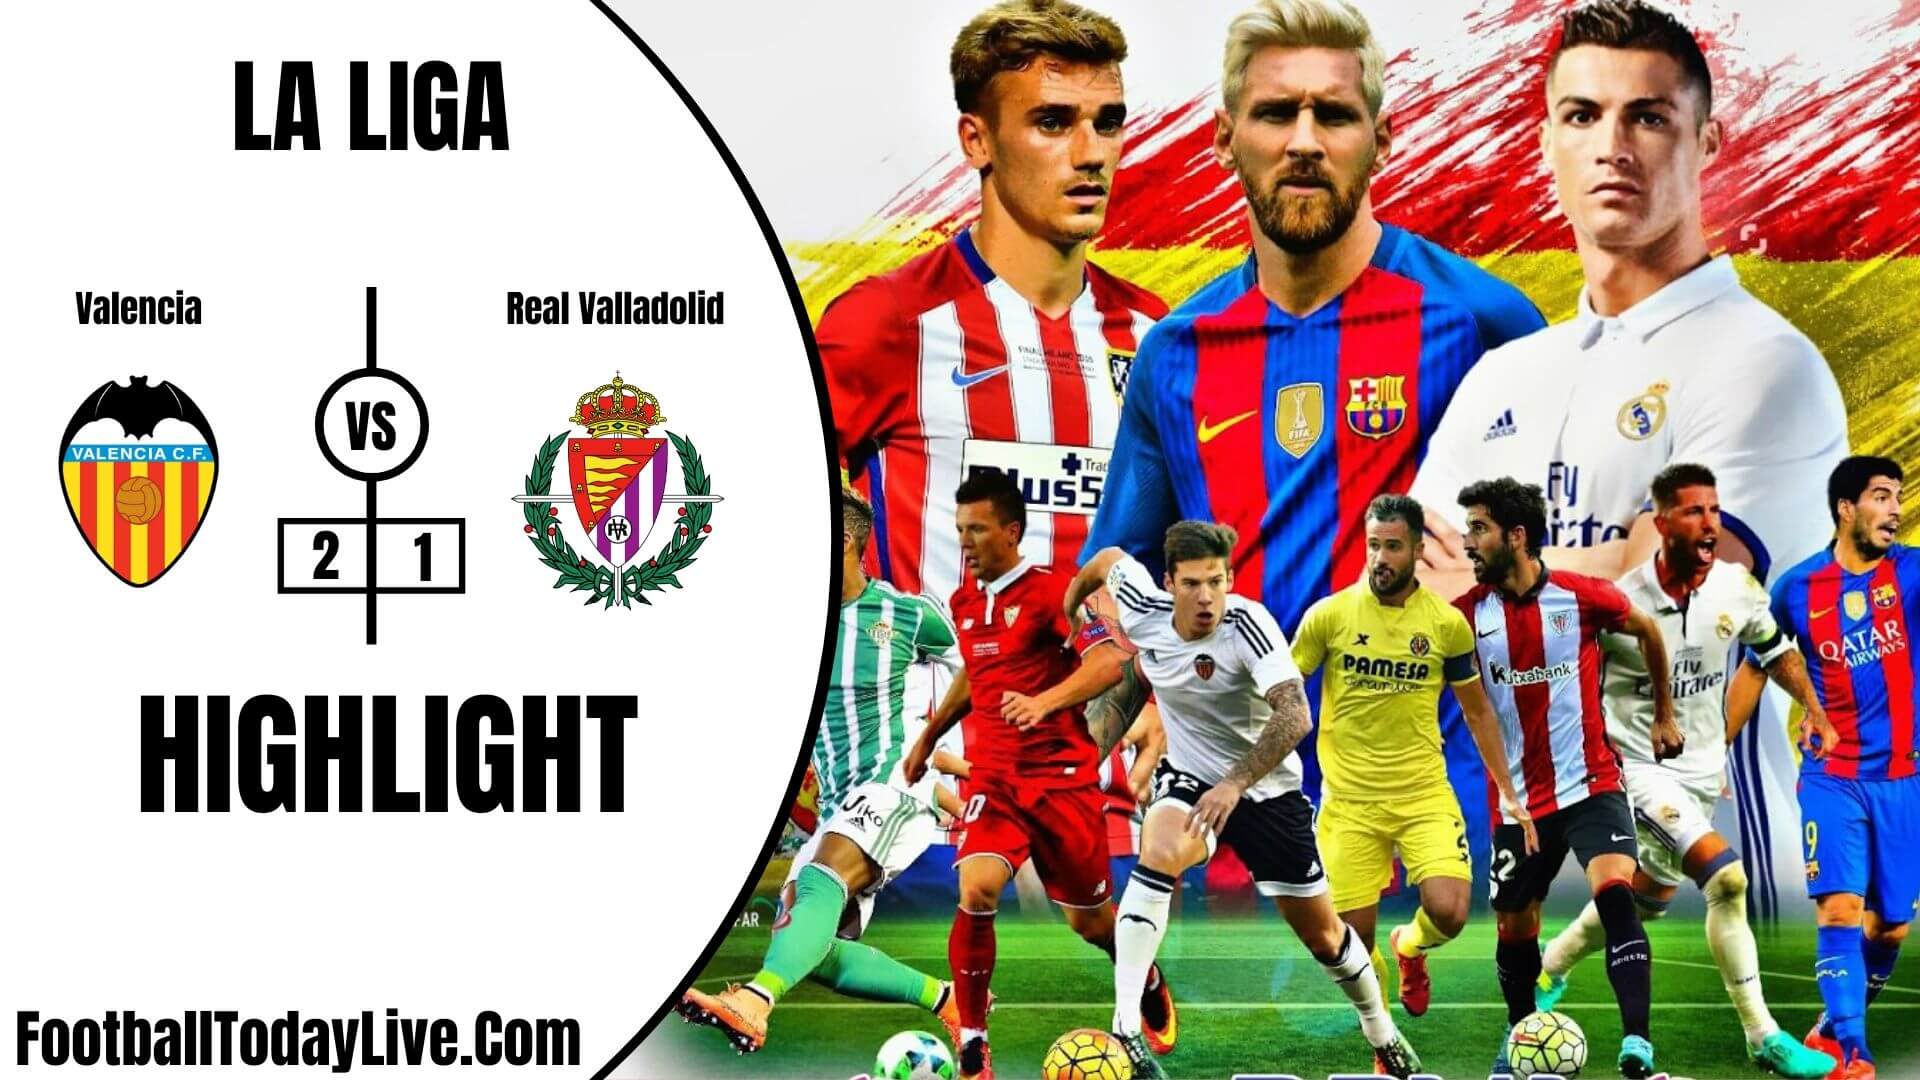 Valencia Vs Real Valladolid Highlights 2020 La Liga Week 35